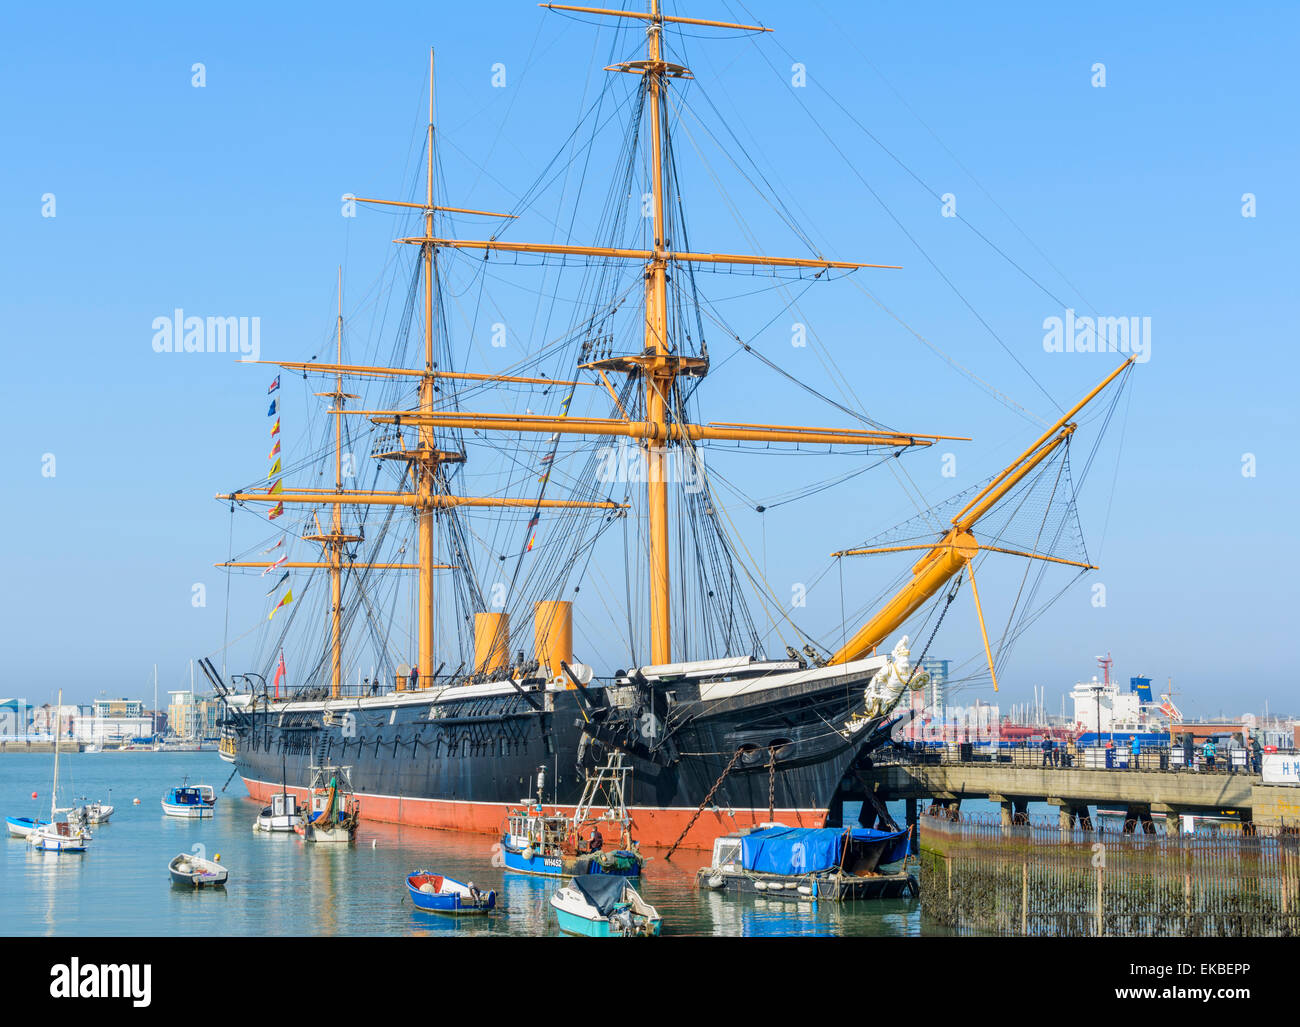 Le HMS Warrior bateau dans les quais dans le port de Portsmouth, Portsmouth, Hampshire, England, UK. Ancien navire de guerre en bois. Banque D'Images